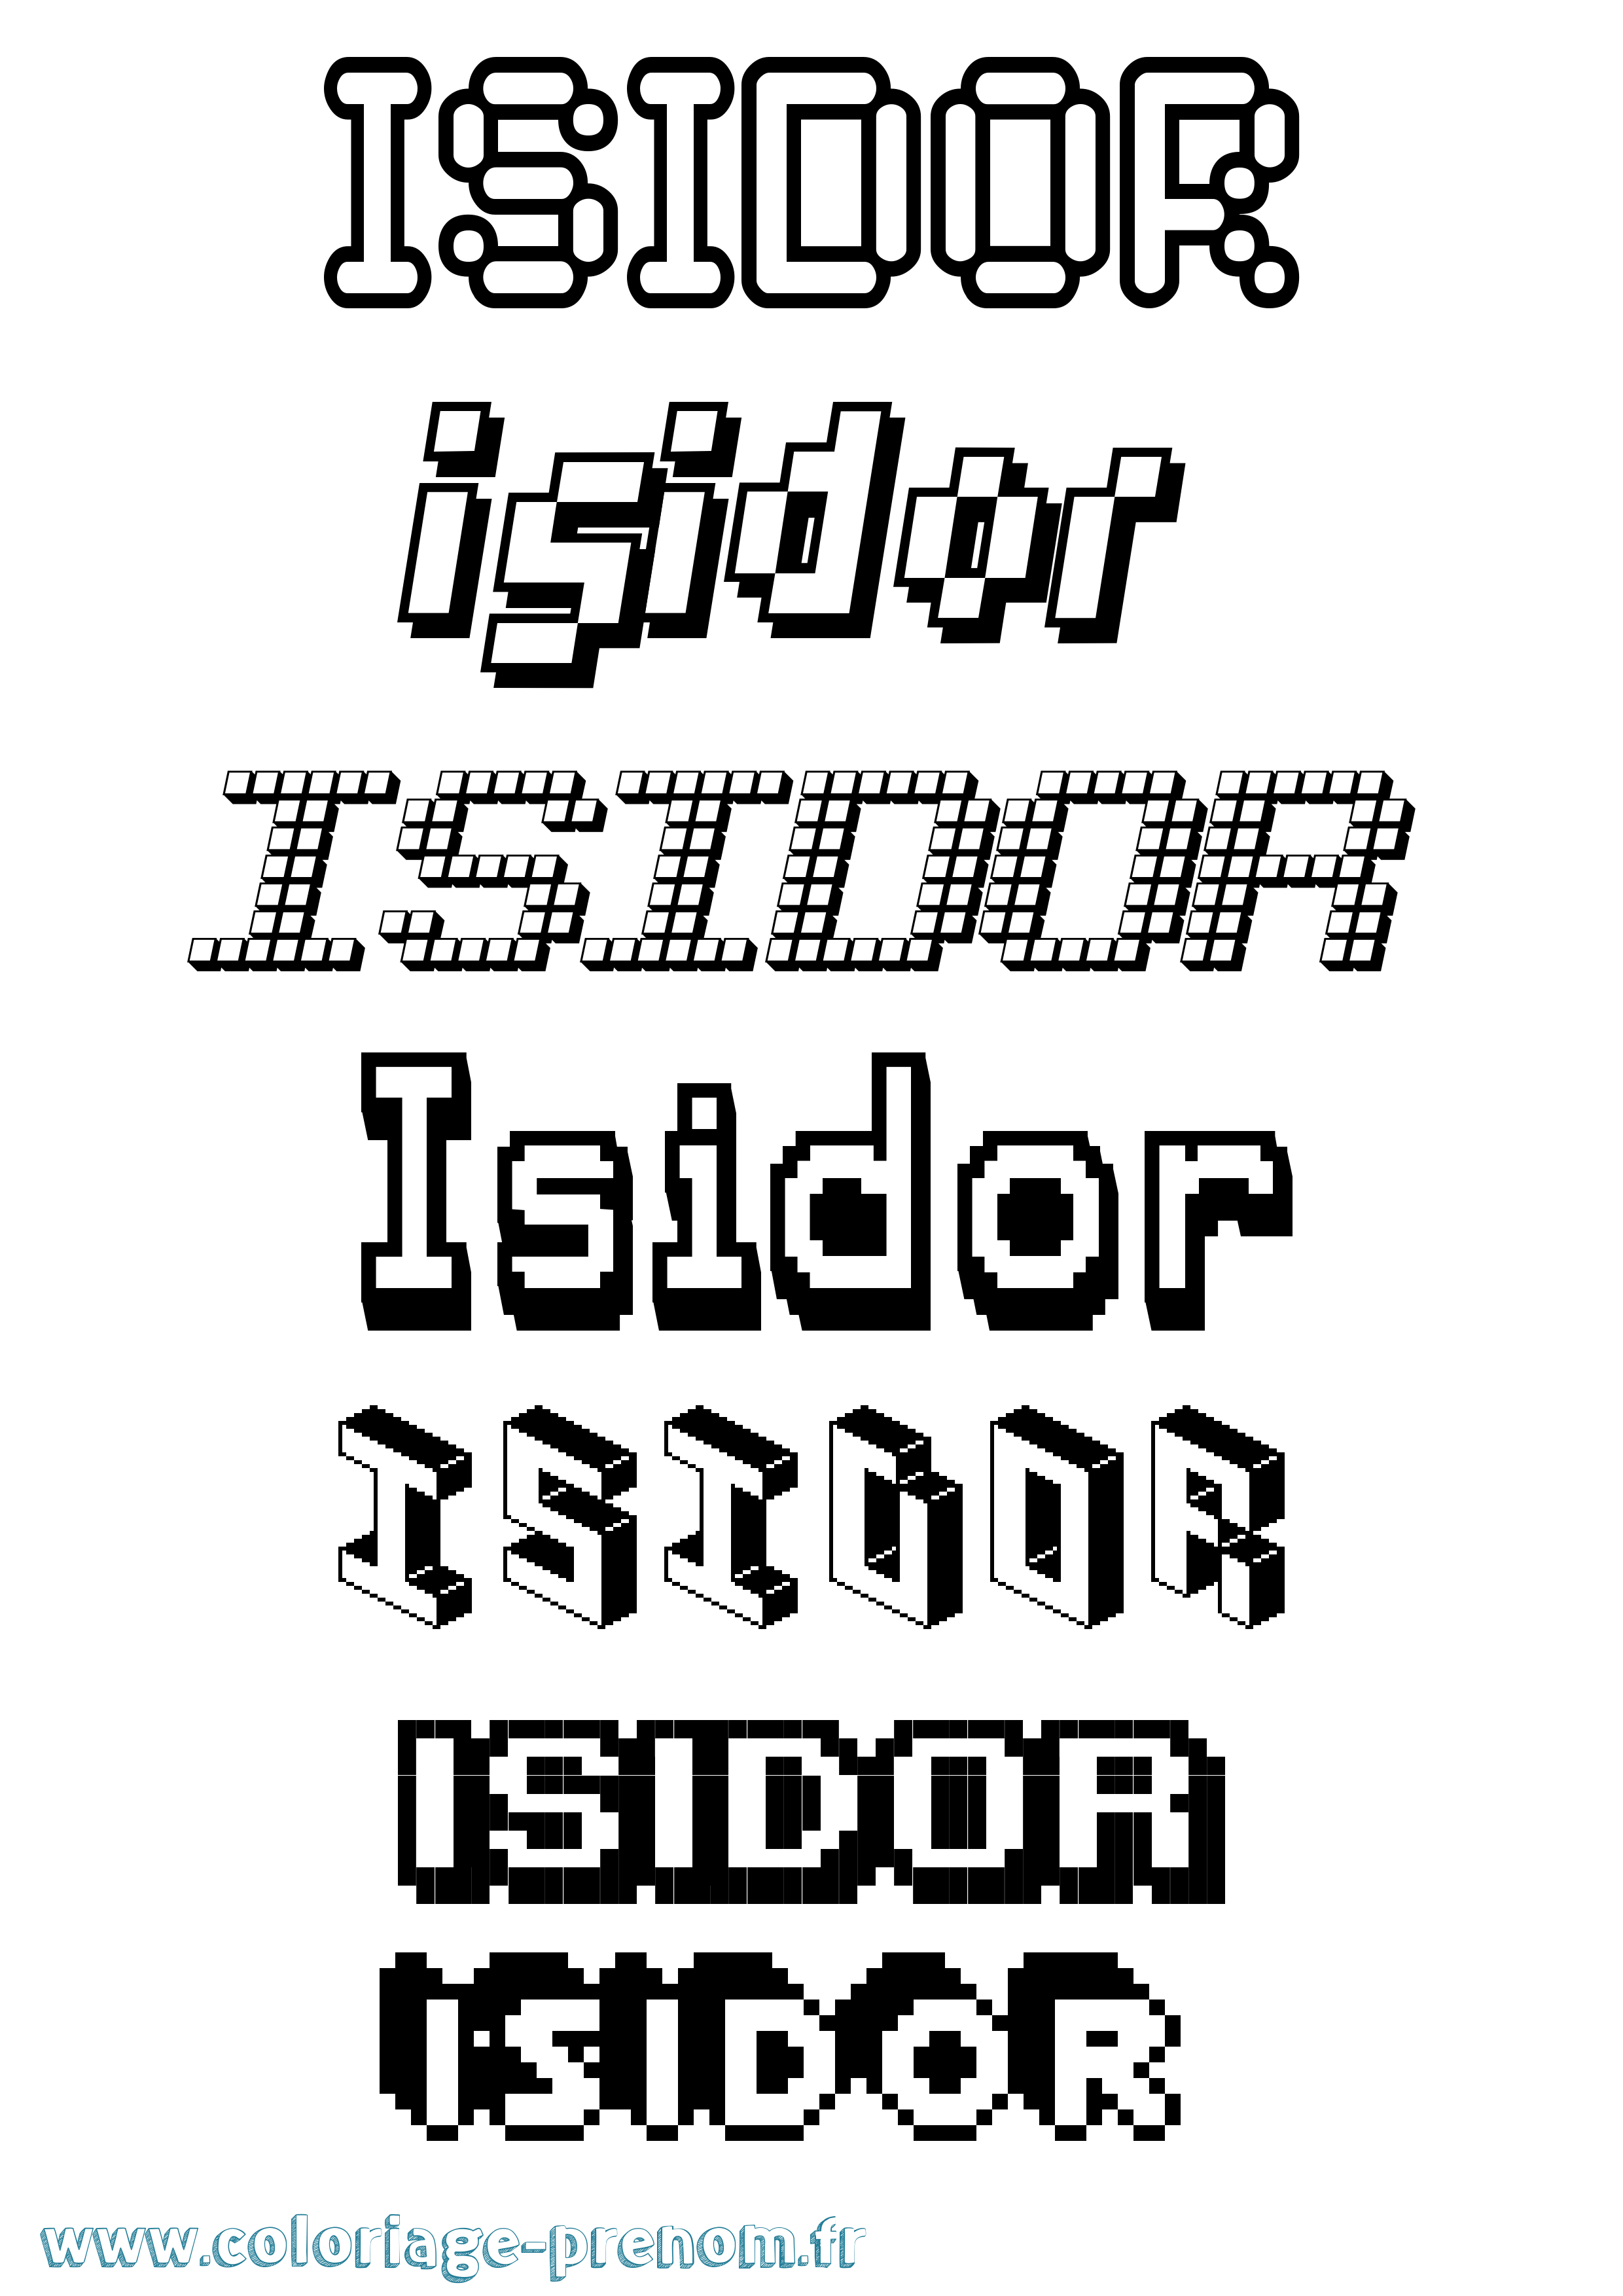 Coloriage prénom Isidor Pixel